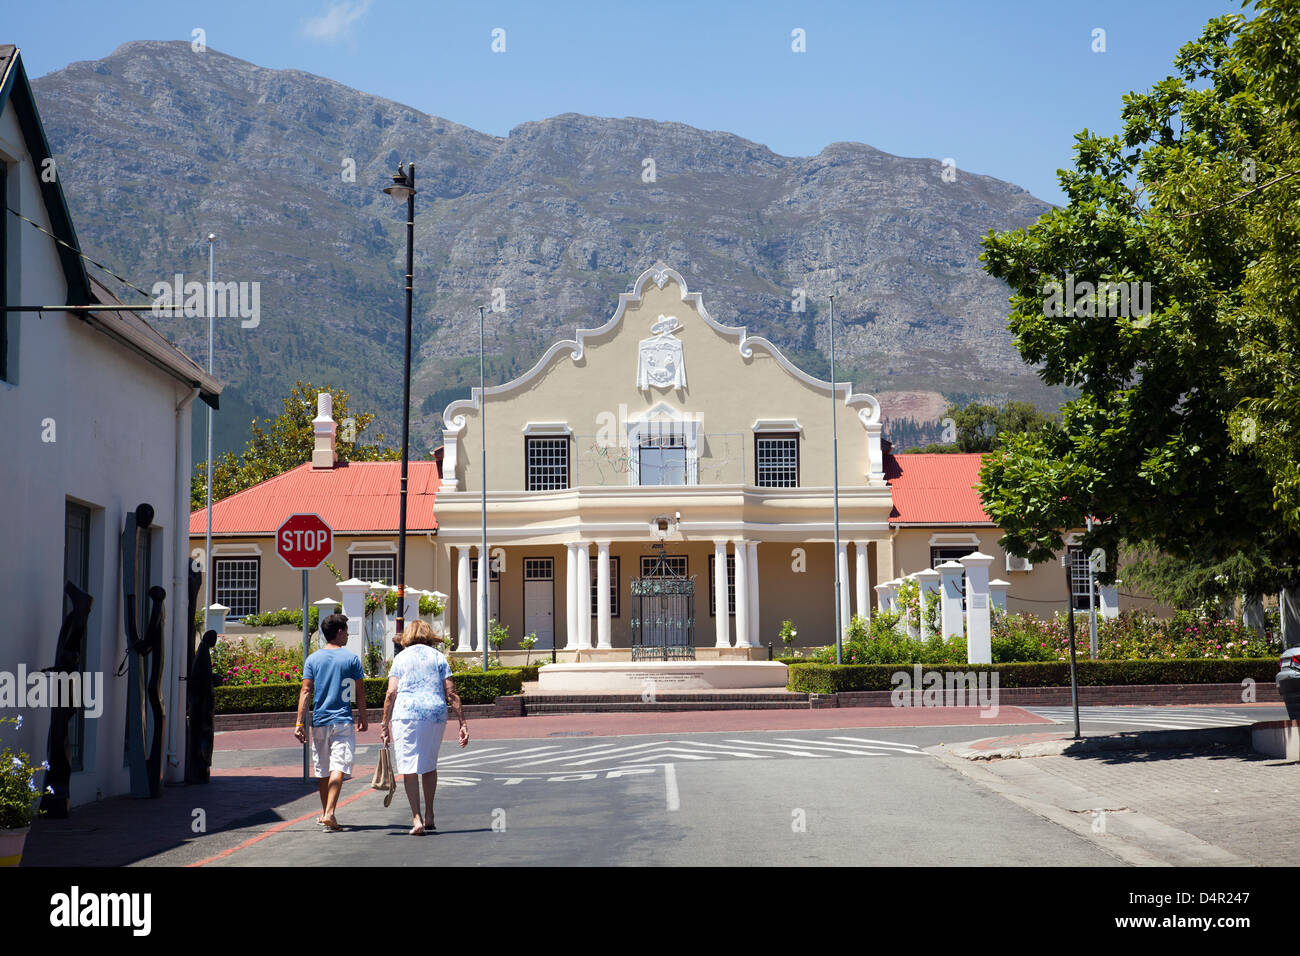 Franschhoek Rathaus im Kap-holländischen Stil Architektur - Western Cape - Südafrika Stockfoto